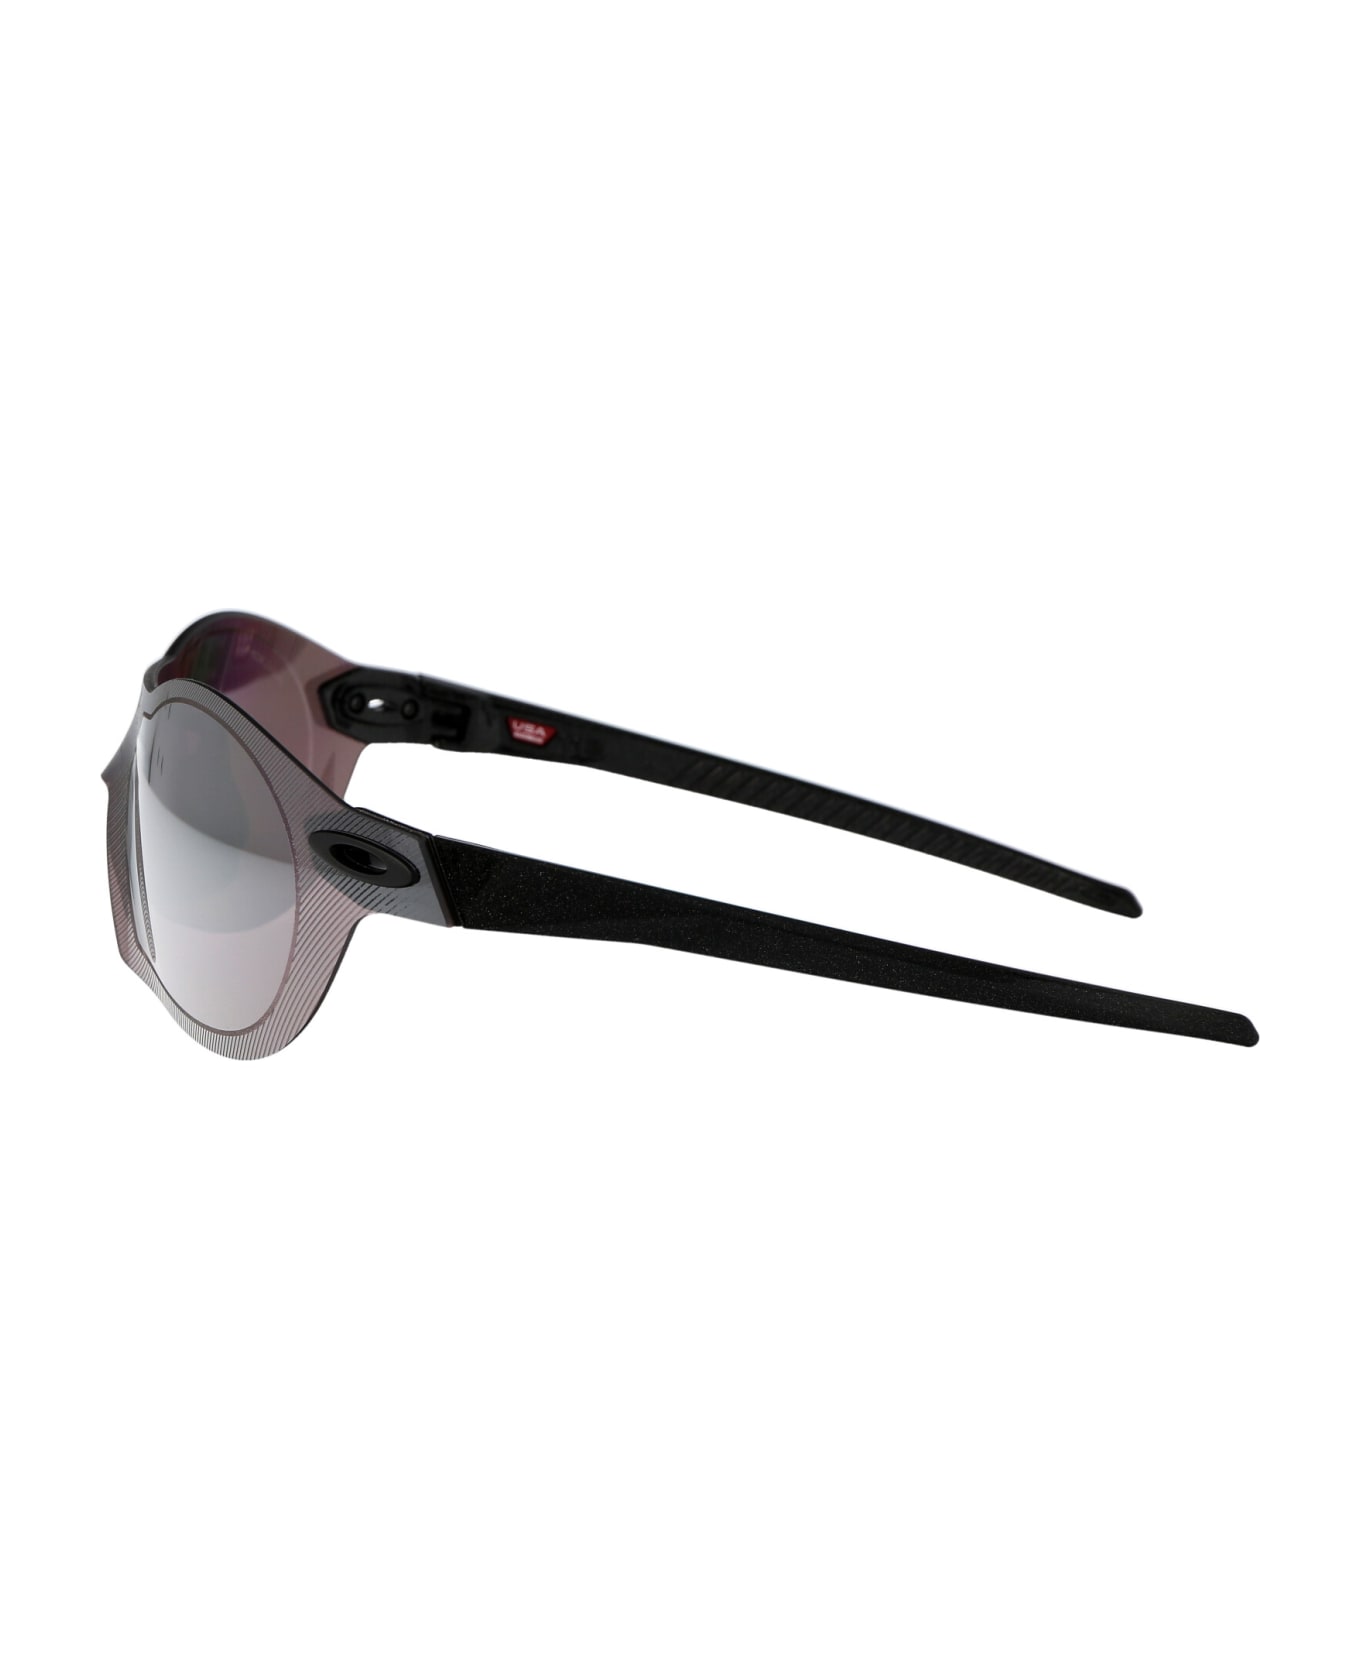 Oakley Re:subzero Sunglasses - Grey/purple